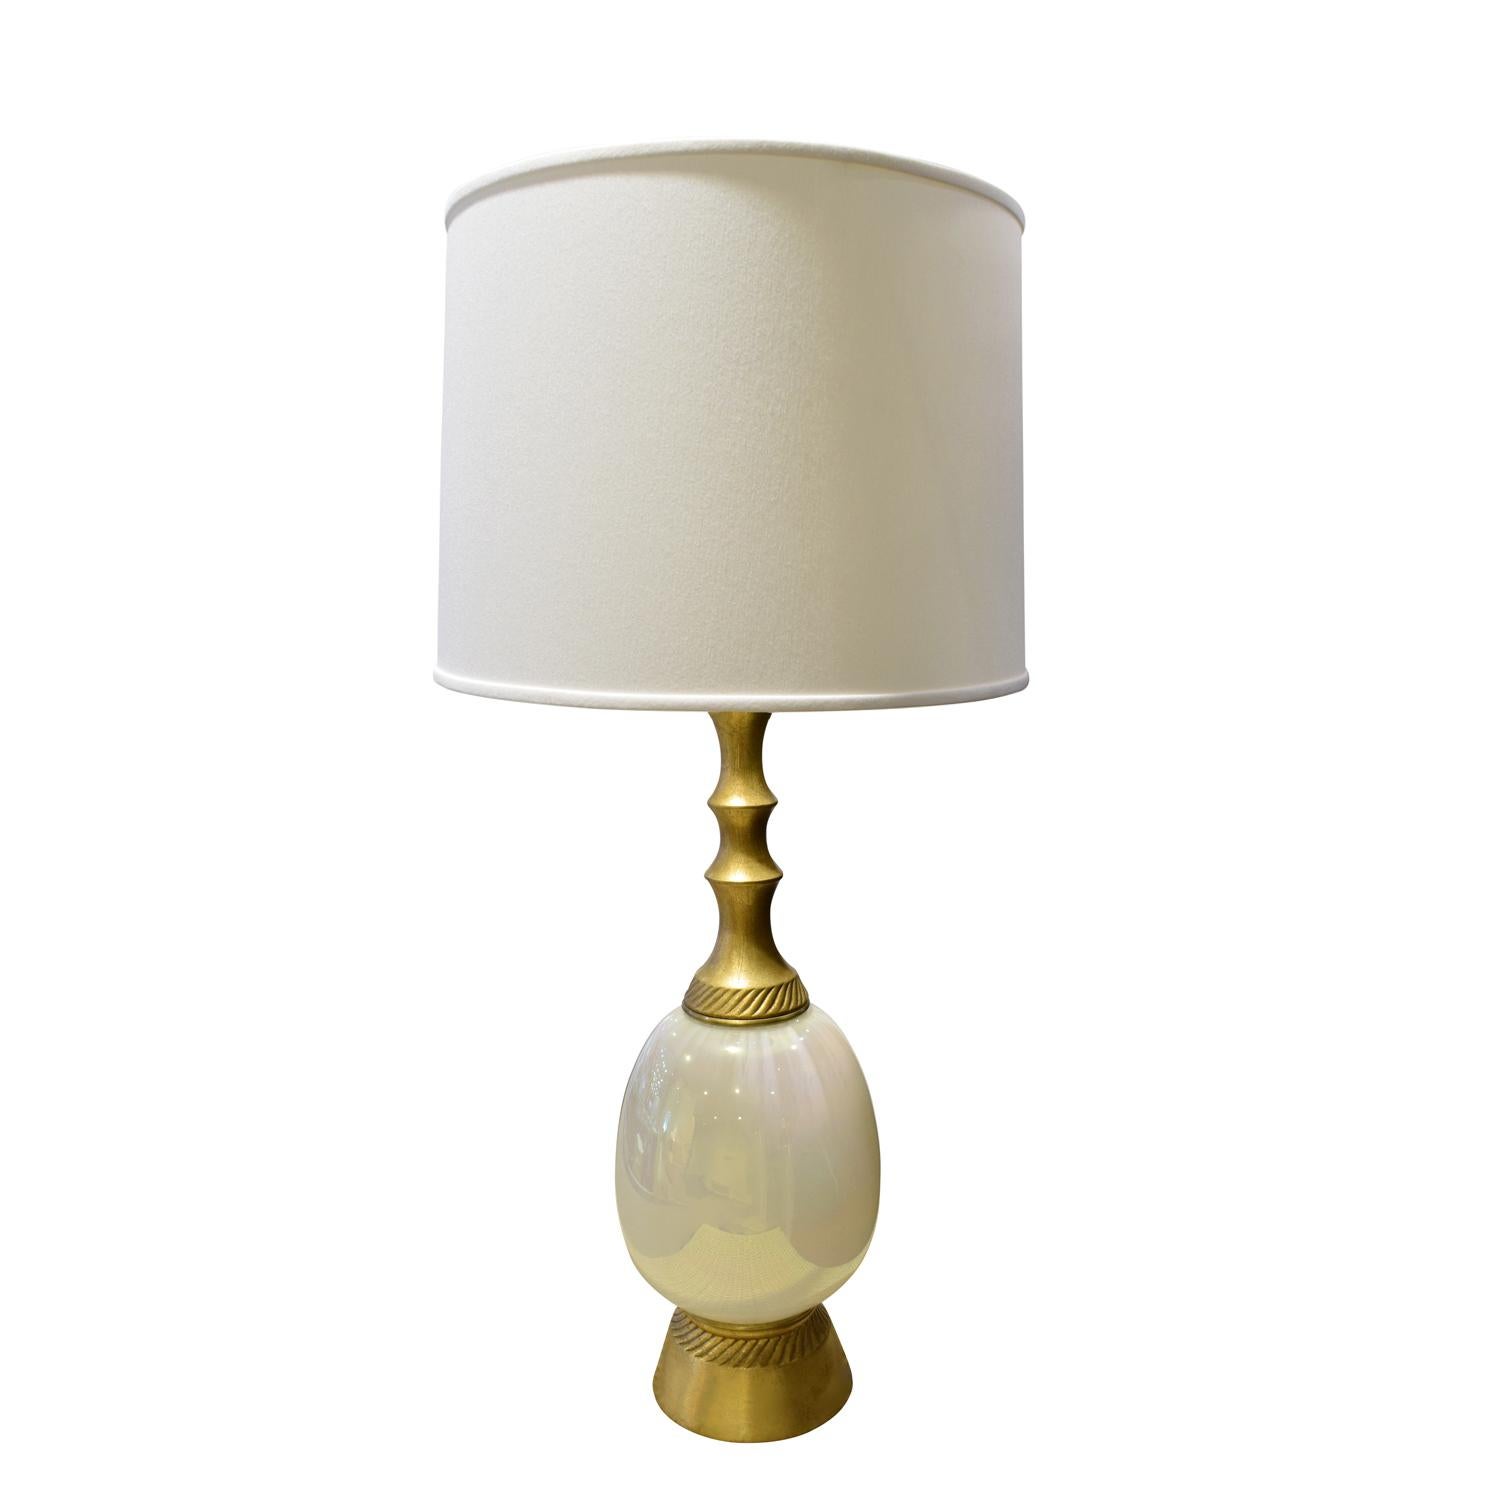 Élégante lampe de table, dorée avec verre opalin, par F.A.I.P., américain, années 1950 (signée sur la base).

Mesures :
Diamètre de l'abat-jour : 18 pouces
Hauteur de l'abat-jour 12 pouces.